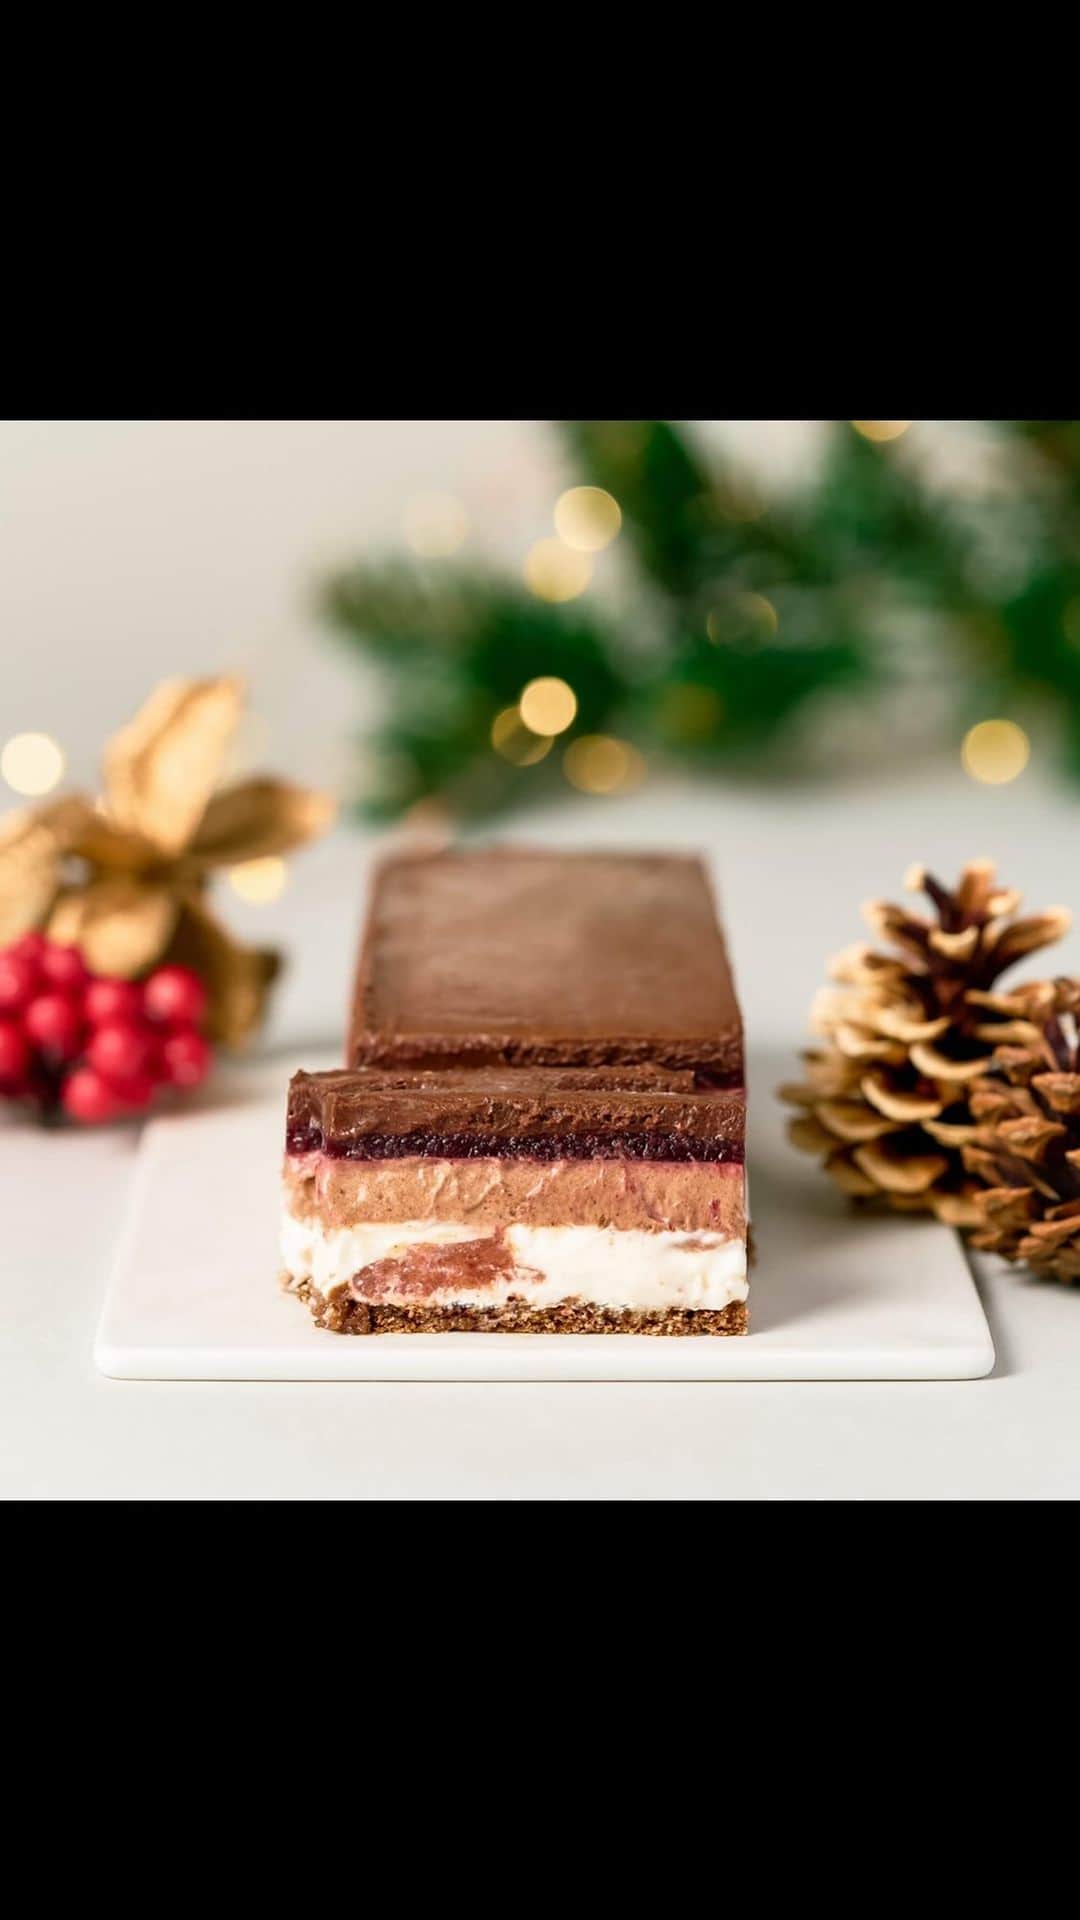 Minimal-BeantoBarChocolate-のインスタグラム：「ホリデーシーズン限定で、チェリーとチョコレートを使った特別なケーキをご用意しています！  フランス語で"黒い森"を意味する、チェリーとチョコレートを使ったスイーツ『フォレ・ノワール』をイメージした、６層仕立ての華やかなケーキです。  チョコレート専門店らしいさまざまな特徴のカカオを組み合わせた複雑なチョコレートの風味に、甘酸っぱいチェリーゼリーや、ムースに用いたキルシュの香りと合わせて、ホリデーシーズンらしい華やかな味わいを存分にお楽しみください！  ————————  　ノエル・ドゥ・ショコラ 　3,980円（税込） 　※WEB・全店舗(富ヶ谷本店・代々木上原店・祖師ヶ谷大蔵店・麻布台ヒルズ店)にて販売中 　 ————————  #MinimalChocolate #MinimalBeanToBarChocolate #craftchocolate #東京カフェ #東京カフェ巡り #東京カフェ部 #東京カフェめぐり #TokyoChocolate #BeantoBatChocolate #クリスマスケーキ #チョコレートケーキ #フォレノワール #チェリーケーキ　#お取り寄せ #通販ケーキ #チョコケーキ #代々木公園 #代々木上原 #yoyogipark #yoyogiuehara #麻布台ヒルズ #祖師ヶ谷大蔵 #クリスマス #クリスマスケーキ2024 #手土産スイーツ」